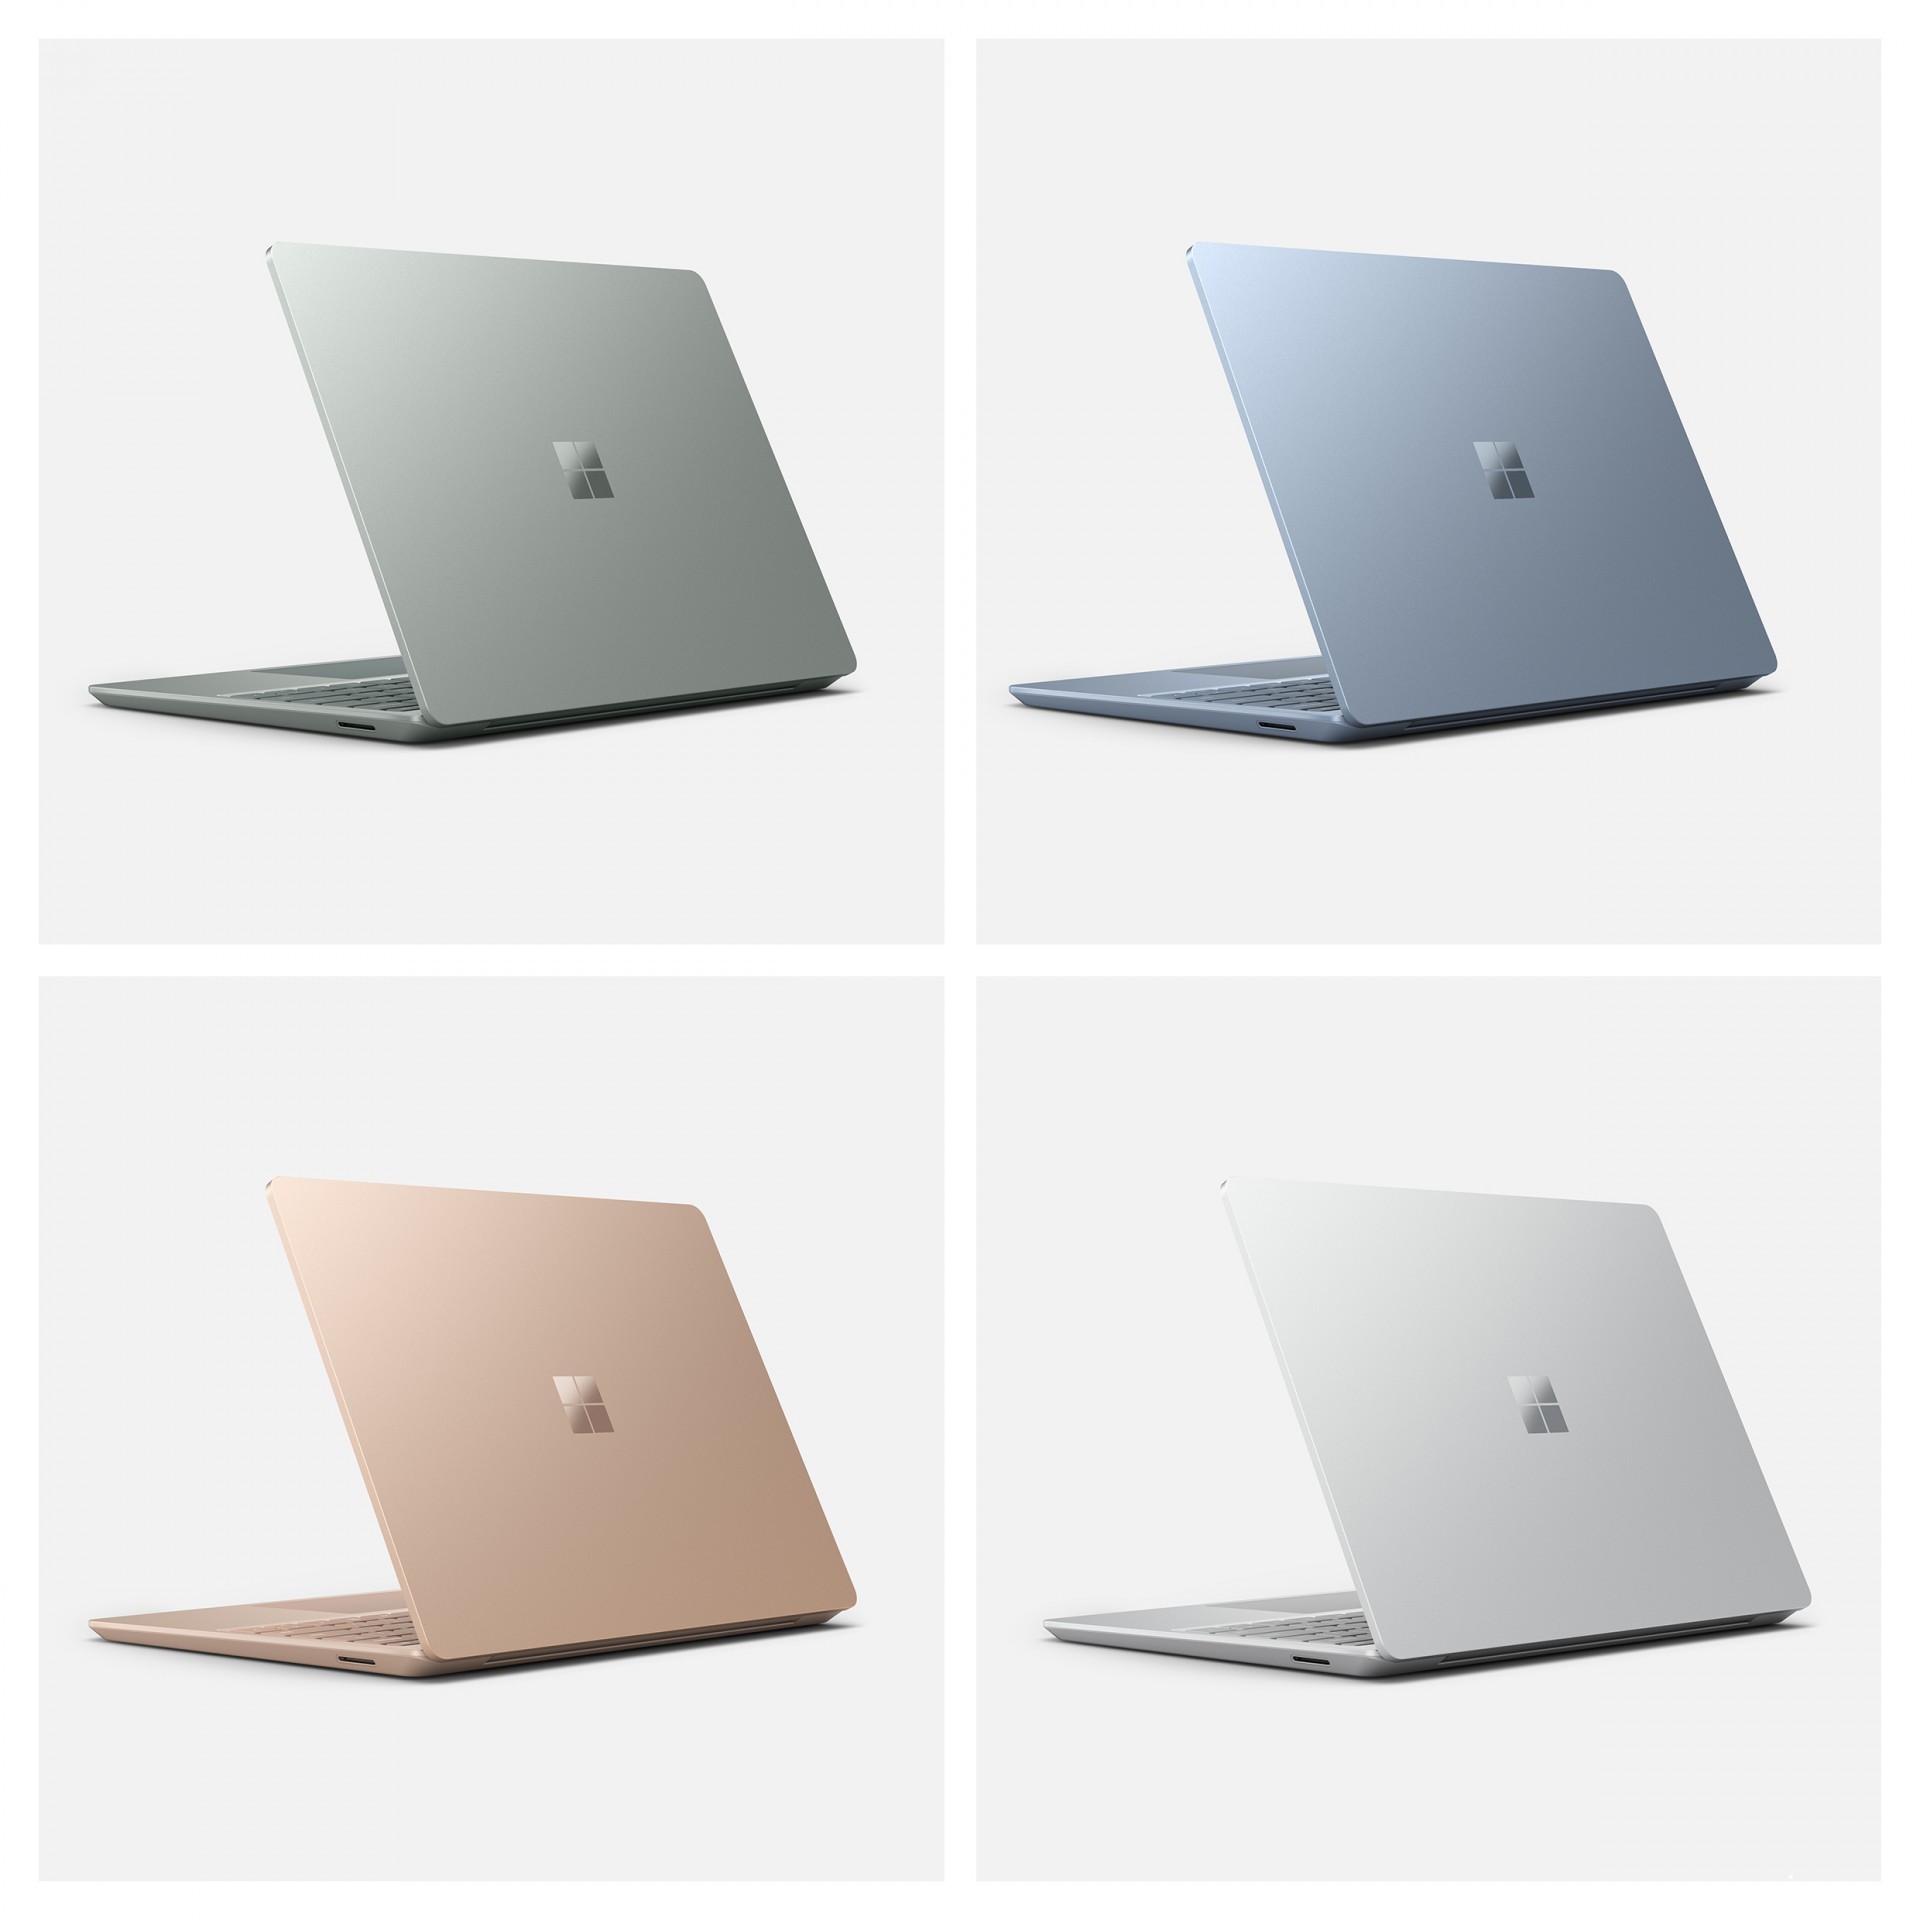 微软宣布推出 Surface Laptop Go 2